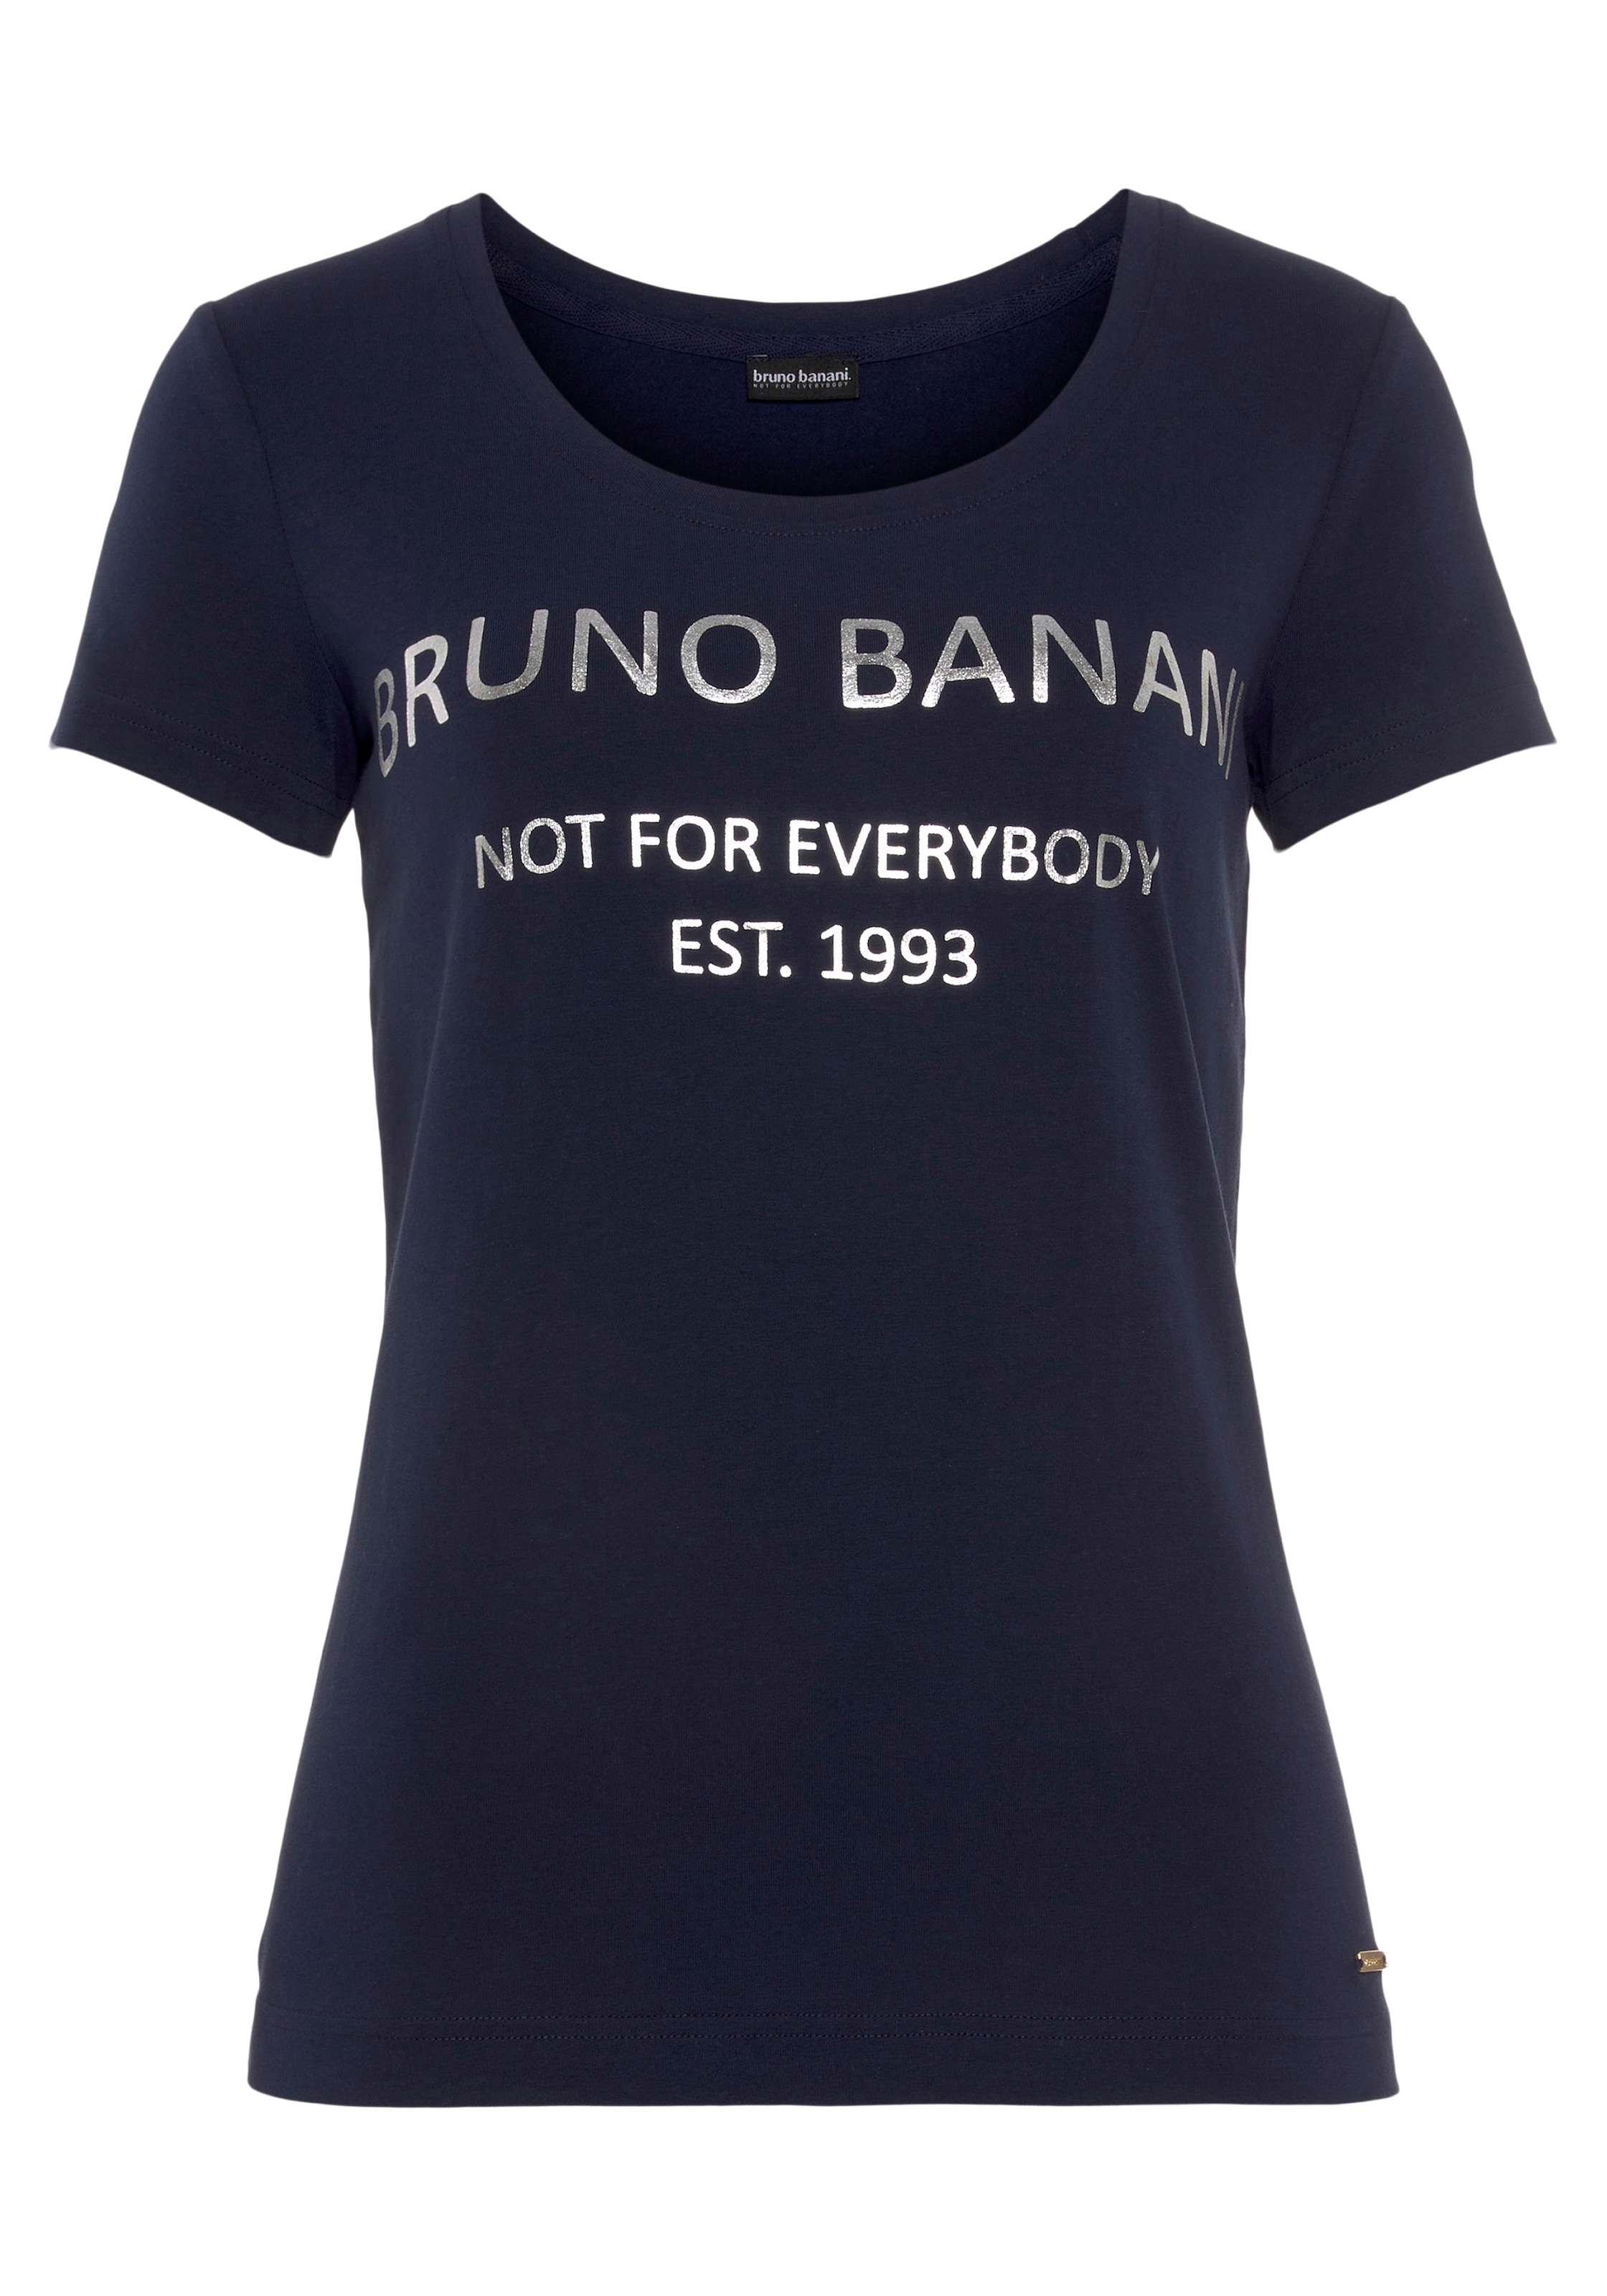 Bruno Banani T-Shirt, mit KOLLEKTION kaufen bei OTTO online goldfarbenem NEUE Logodruck